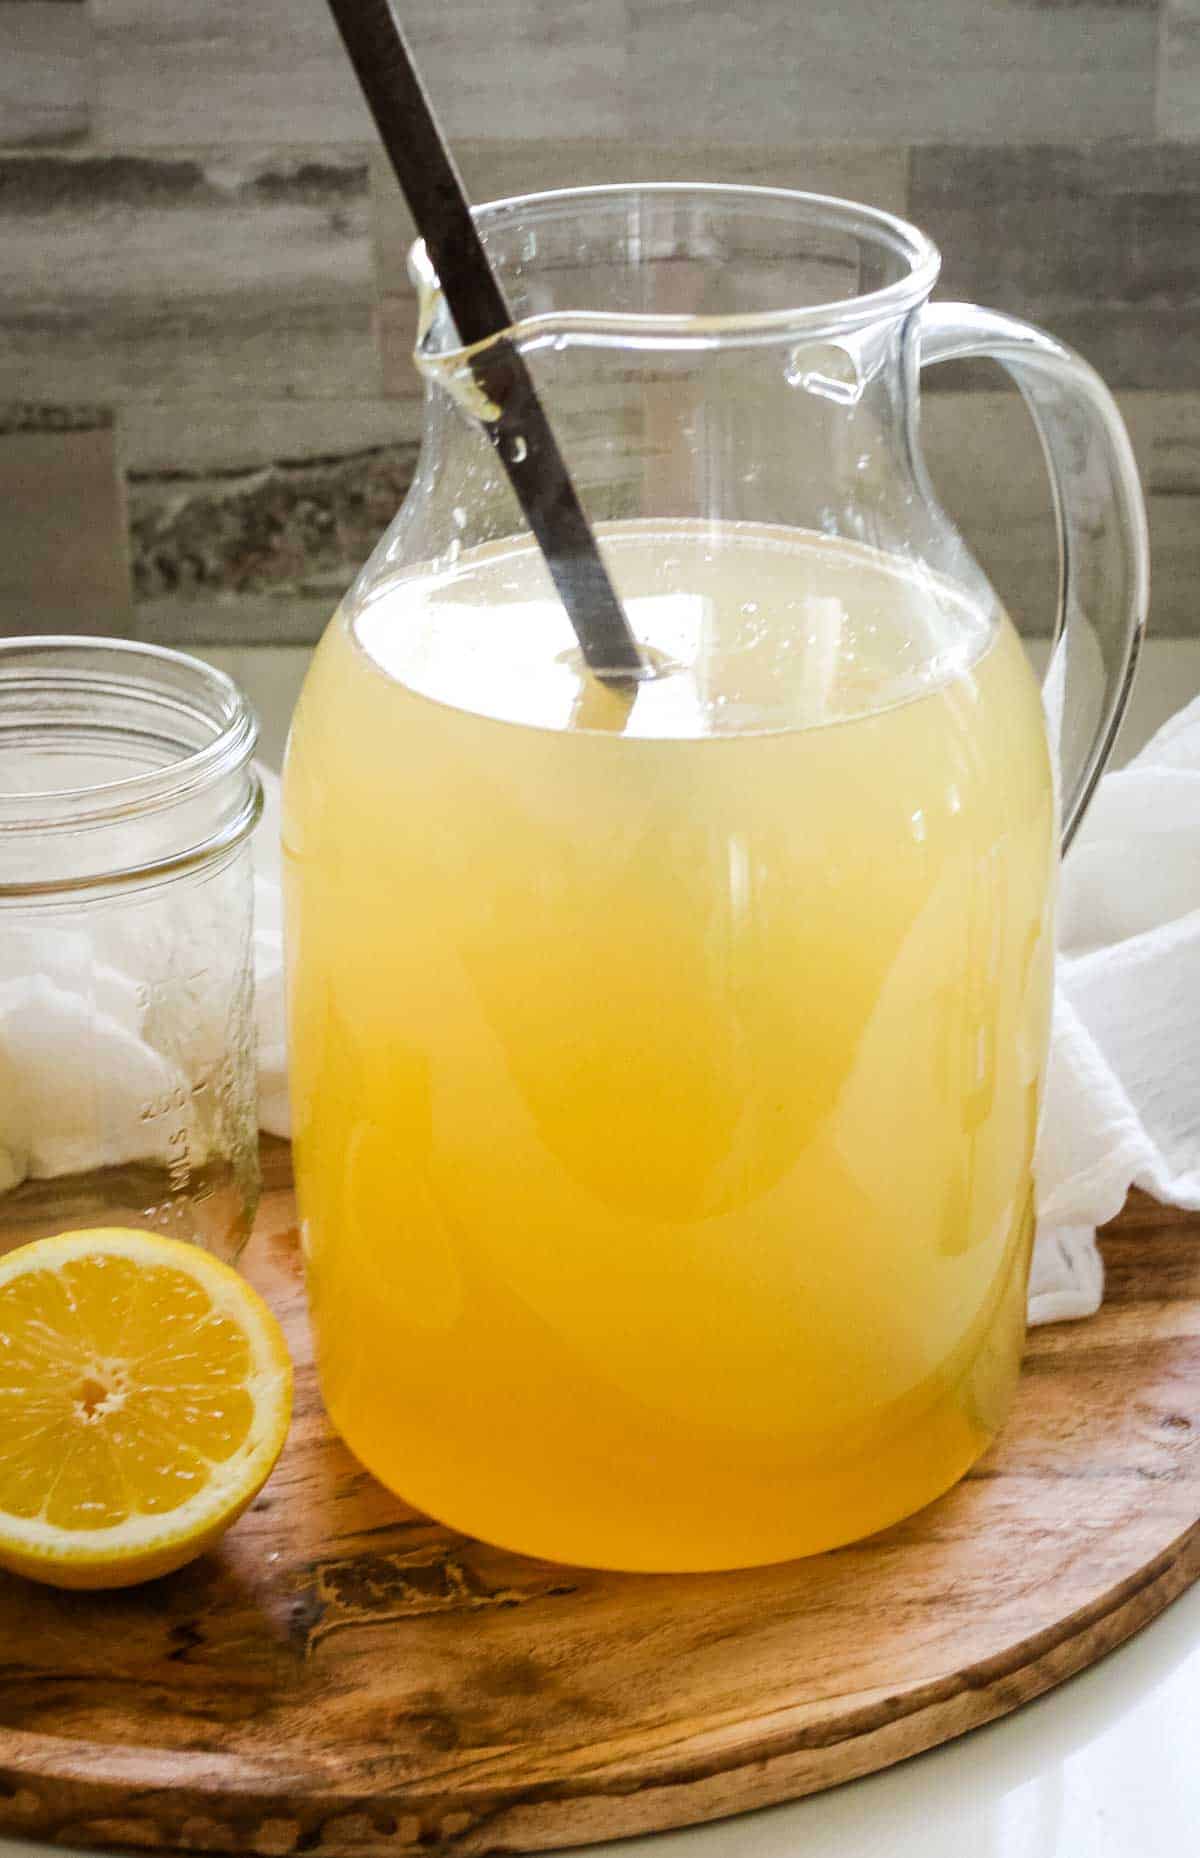 honey lemonade in a glass pitcher on wooden board.